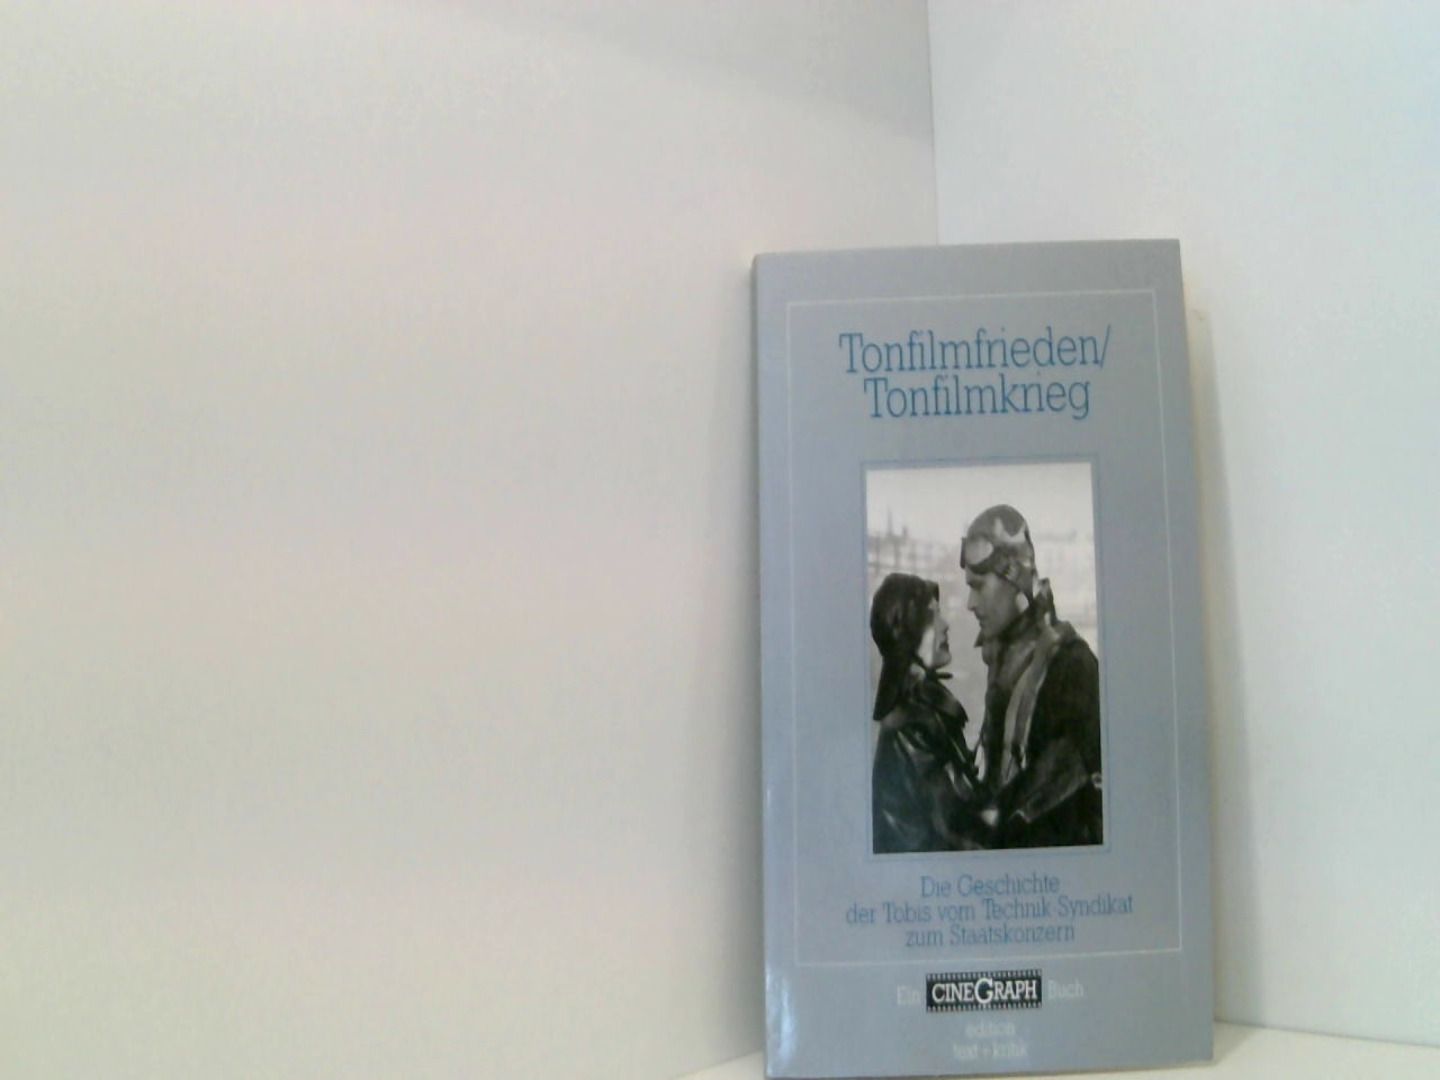 Tonfilmfrieden/Tonfilmkrieg: Die Geschichte der Tobis vom Technik-Syndikat zum Staatskonzern (CineGraph Buch) - Hans-Michael, Bock, Jacobsen Wolfgang Schöning Jörg  u. a.